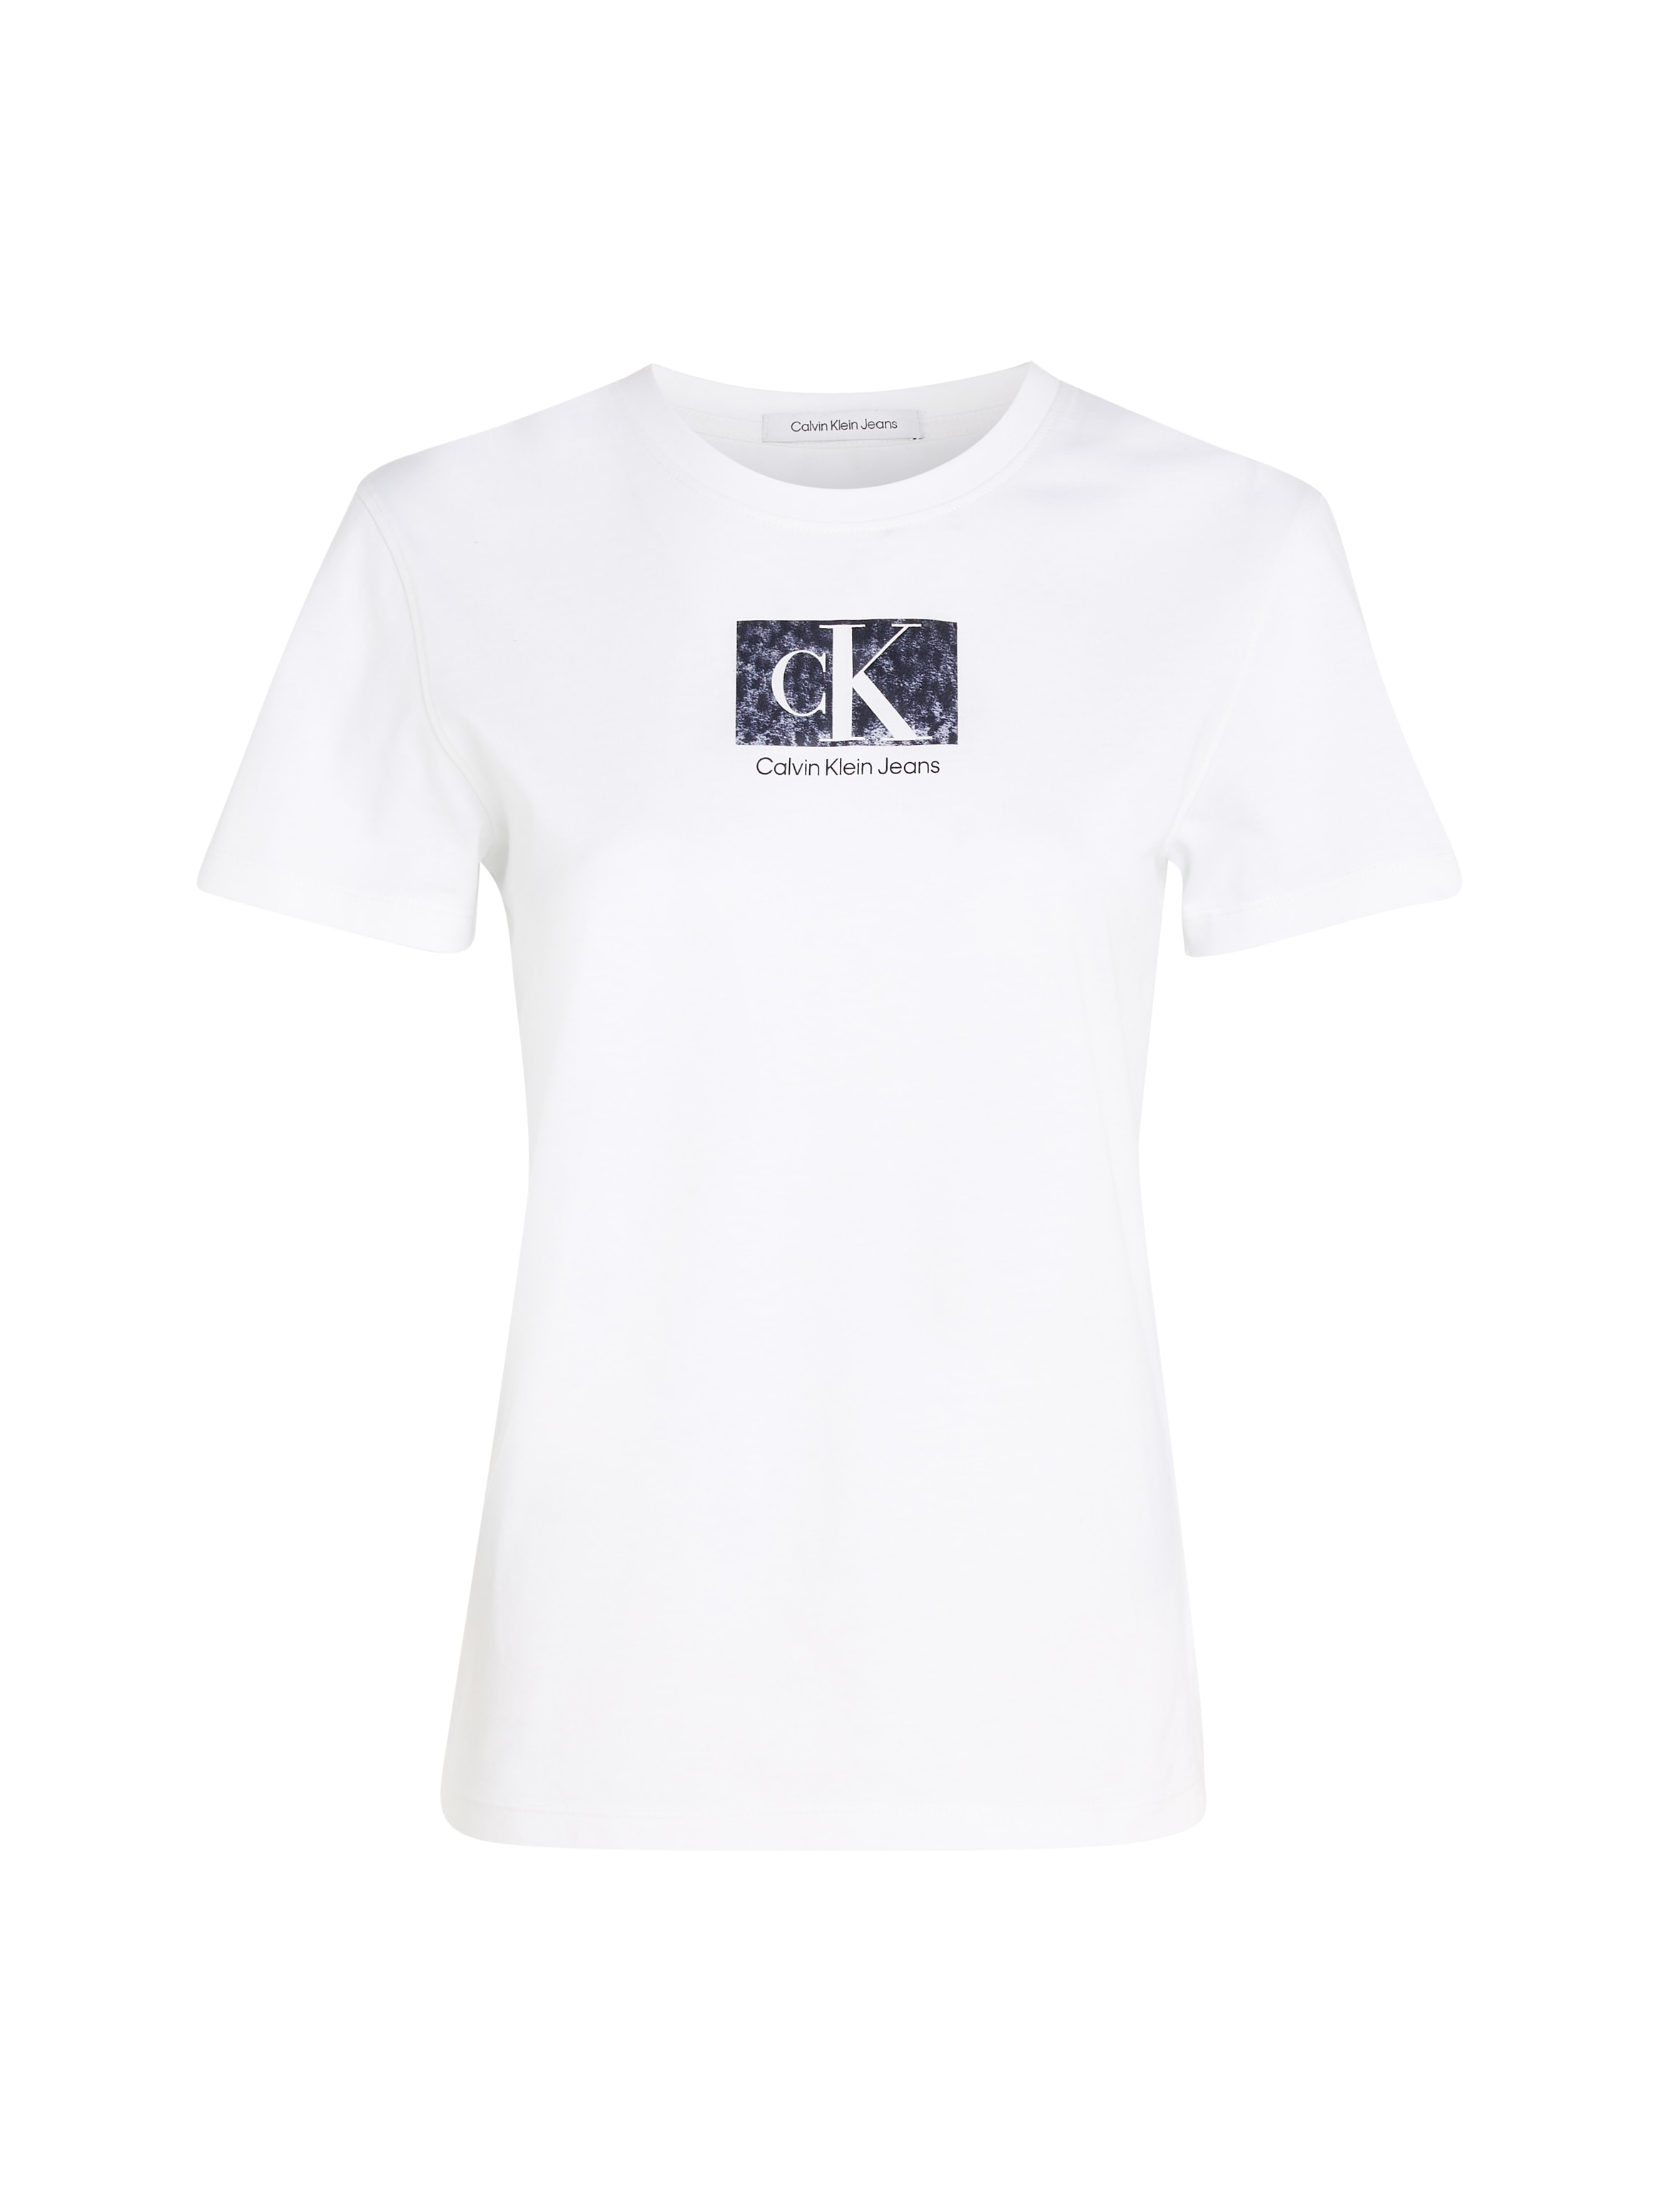 Calvin Klein BOX TEE« SLIM »PRINTED bei Jeans T-Shirt ♕